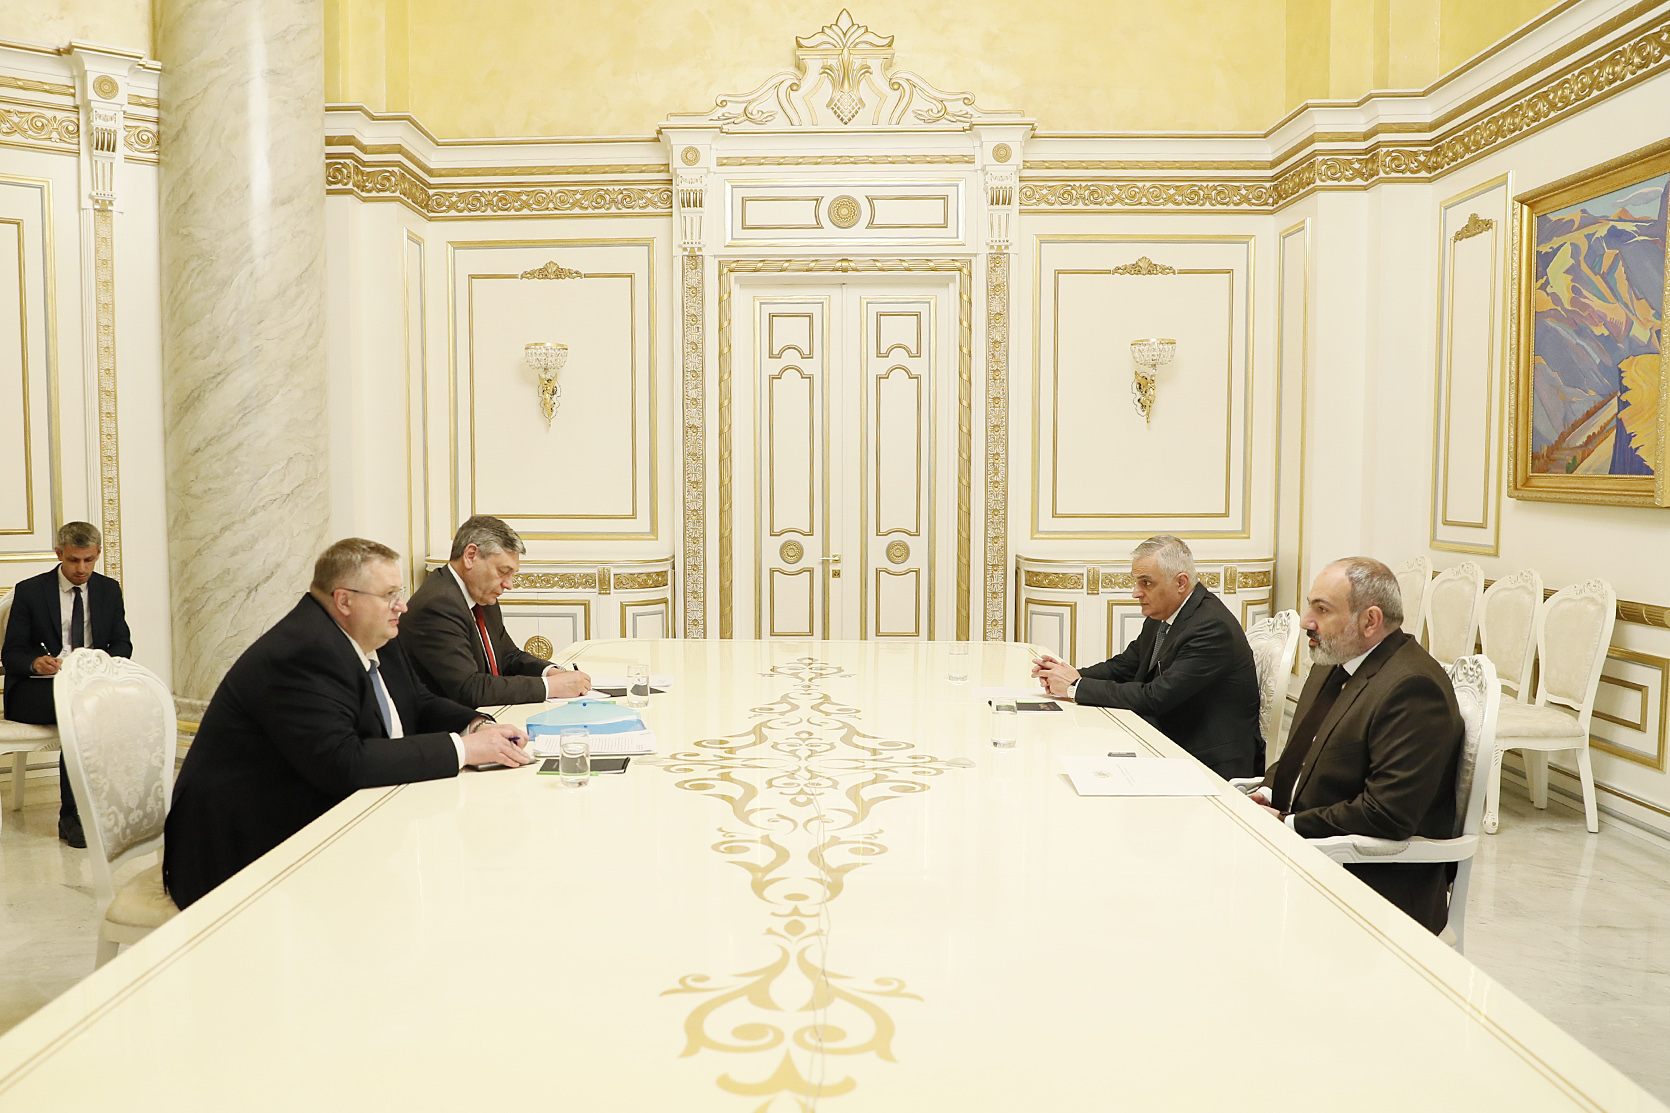 Пашинян на встрече с российской делегацией заявил об общих с Путиным подходах по открытию коммуникаций в регионе 